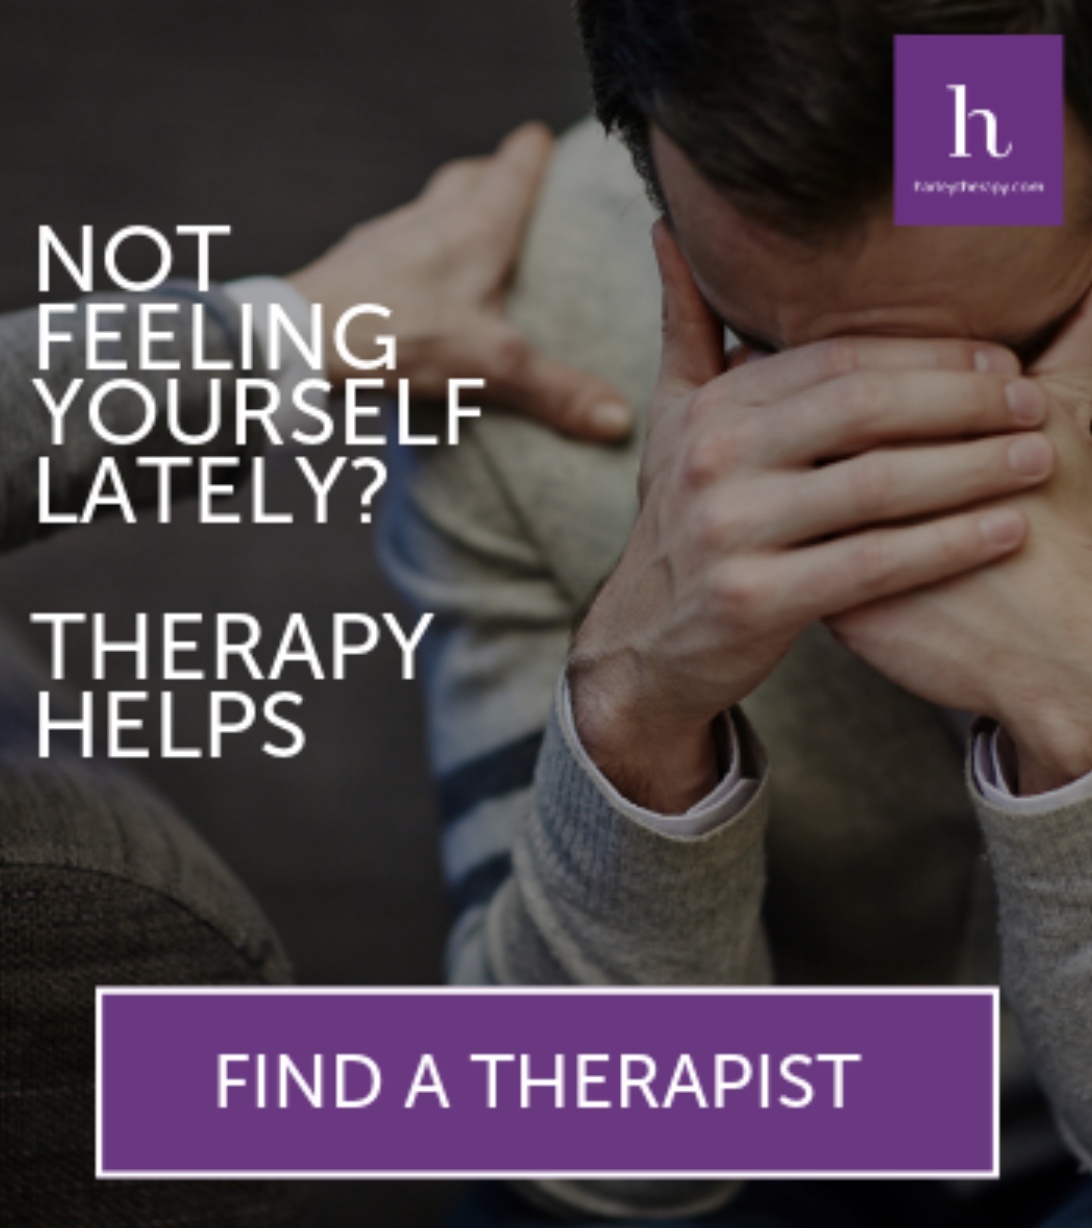 Encuentre terapeutas asequibles en línea